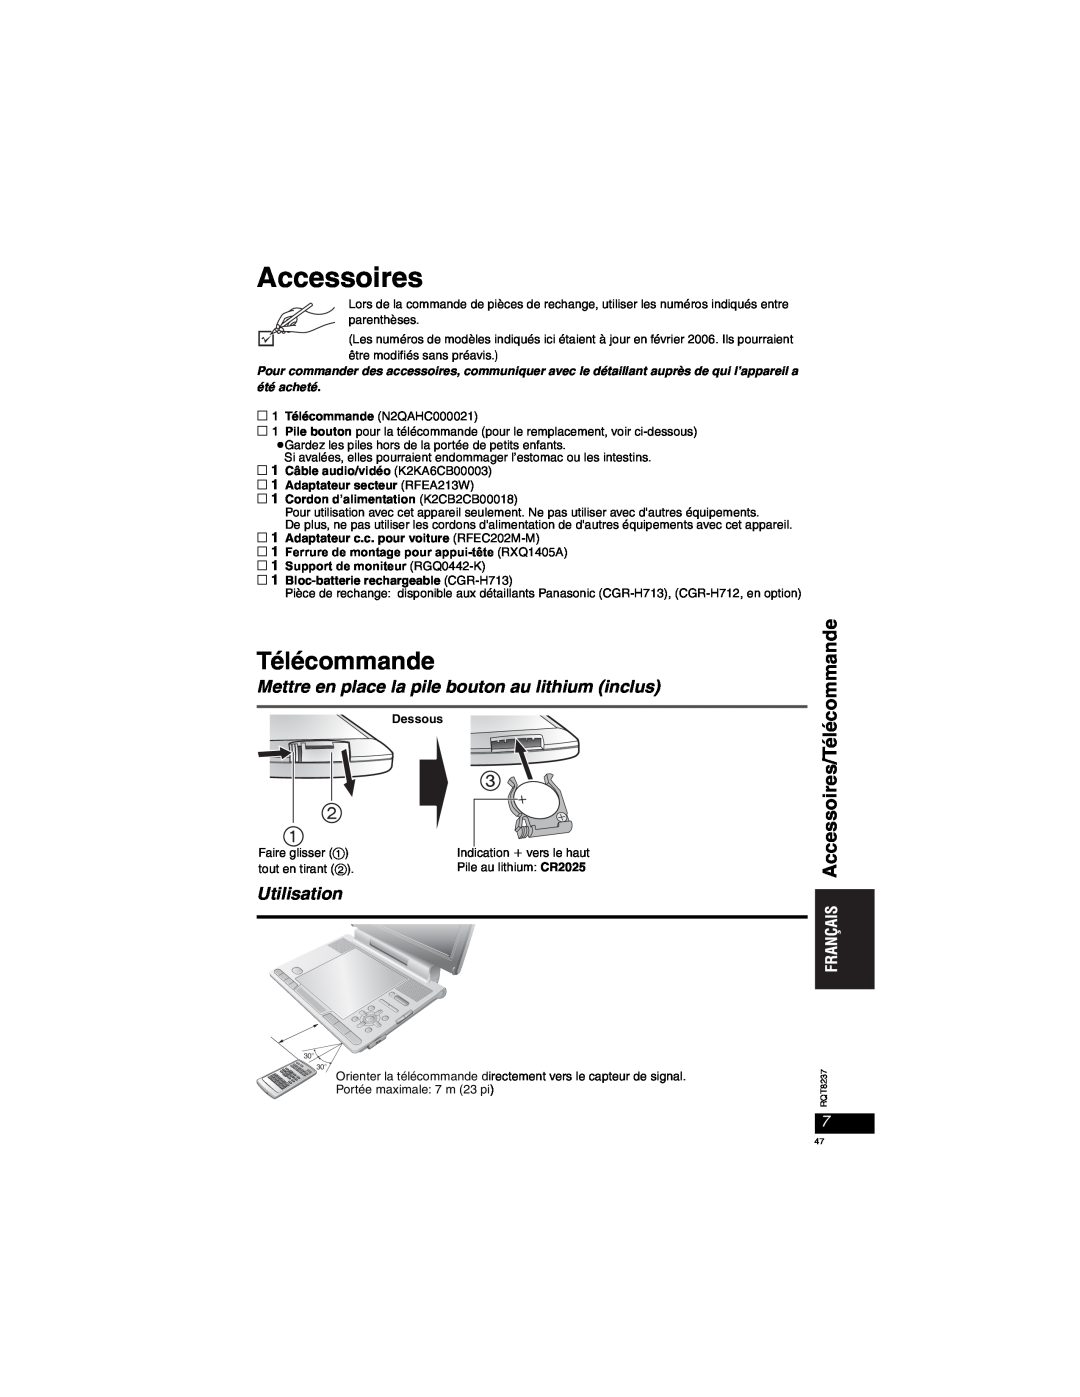 Panasonic DVD-LX97 Accessoires/Télécommande, Mettre en place la pile bouton au lithium inclus, Utilisation 